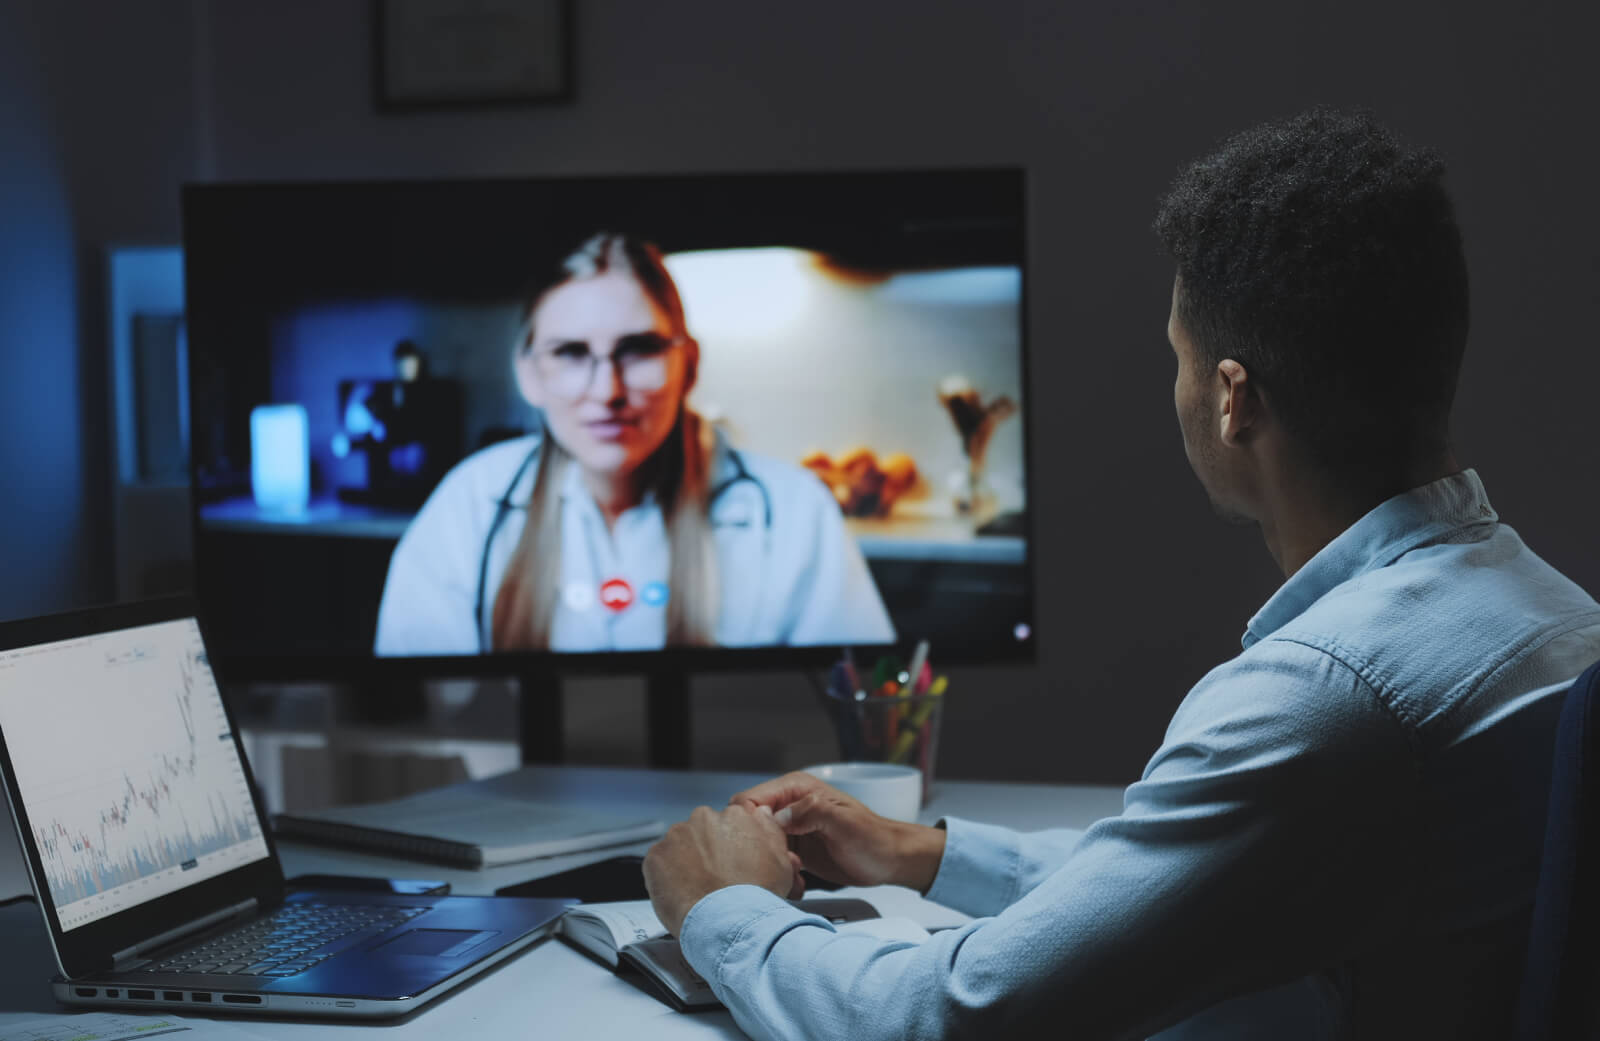 A imagem mostra uma profissional da saúde e seu paciente em uma teleconferência, uma das várias possibilidades abertas pela tecnologia e inovação na área da saúde.